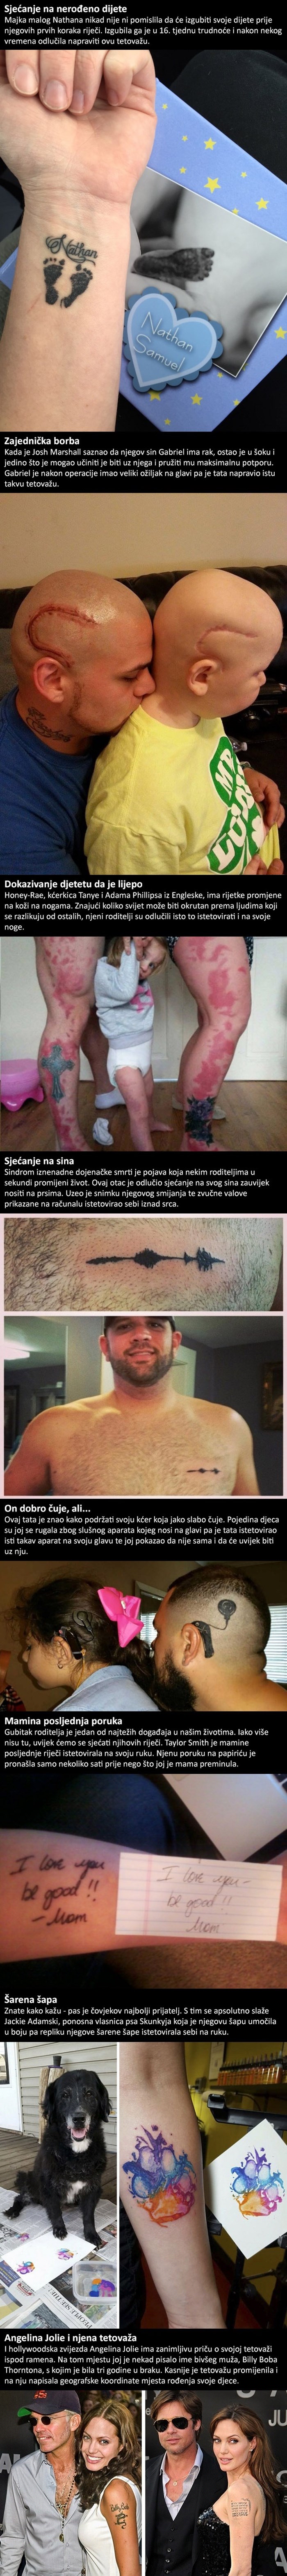 Ove tetovaže imaju dublje značenje, oduševit će čak i one koji nisu ljubitelji ovakve vrste ukrašavanja tijela